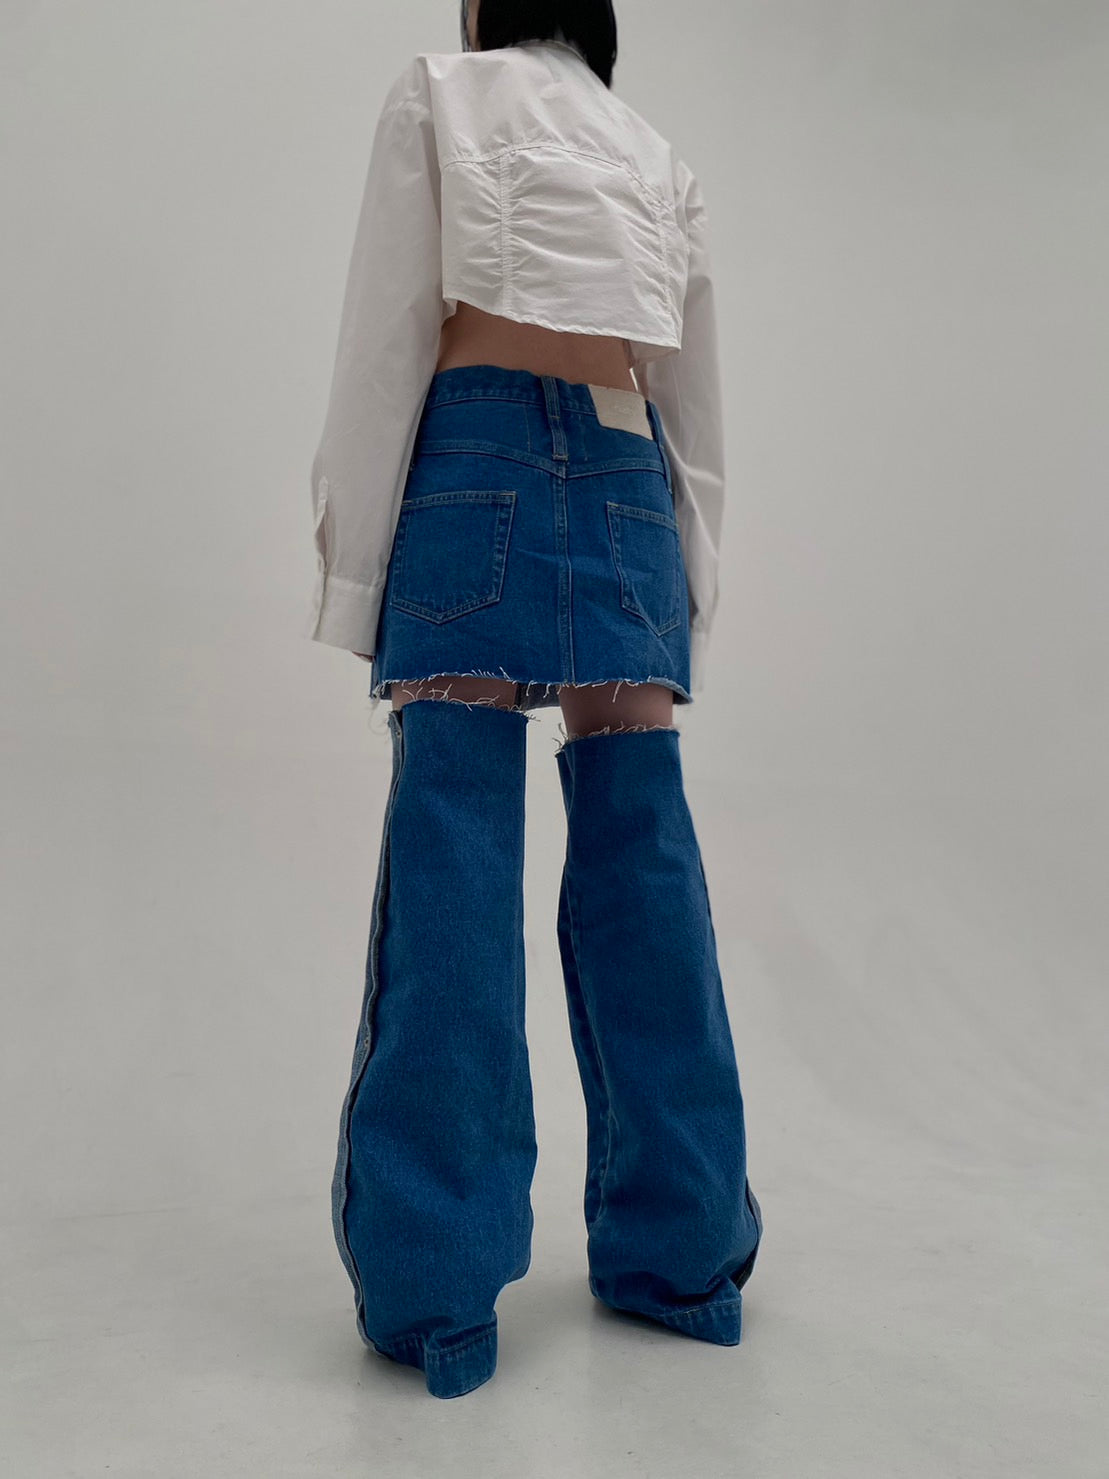 Denim Skirt With Legcover(Blue)